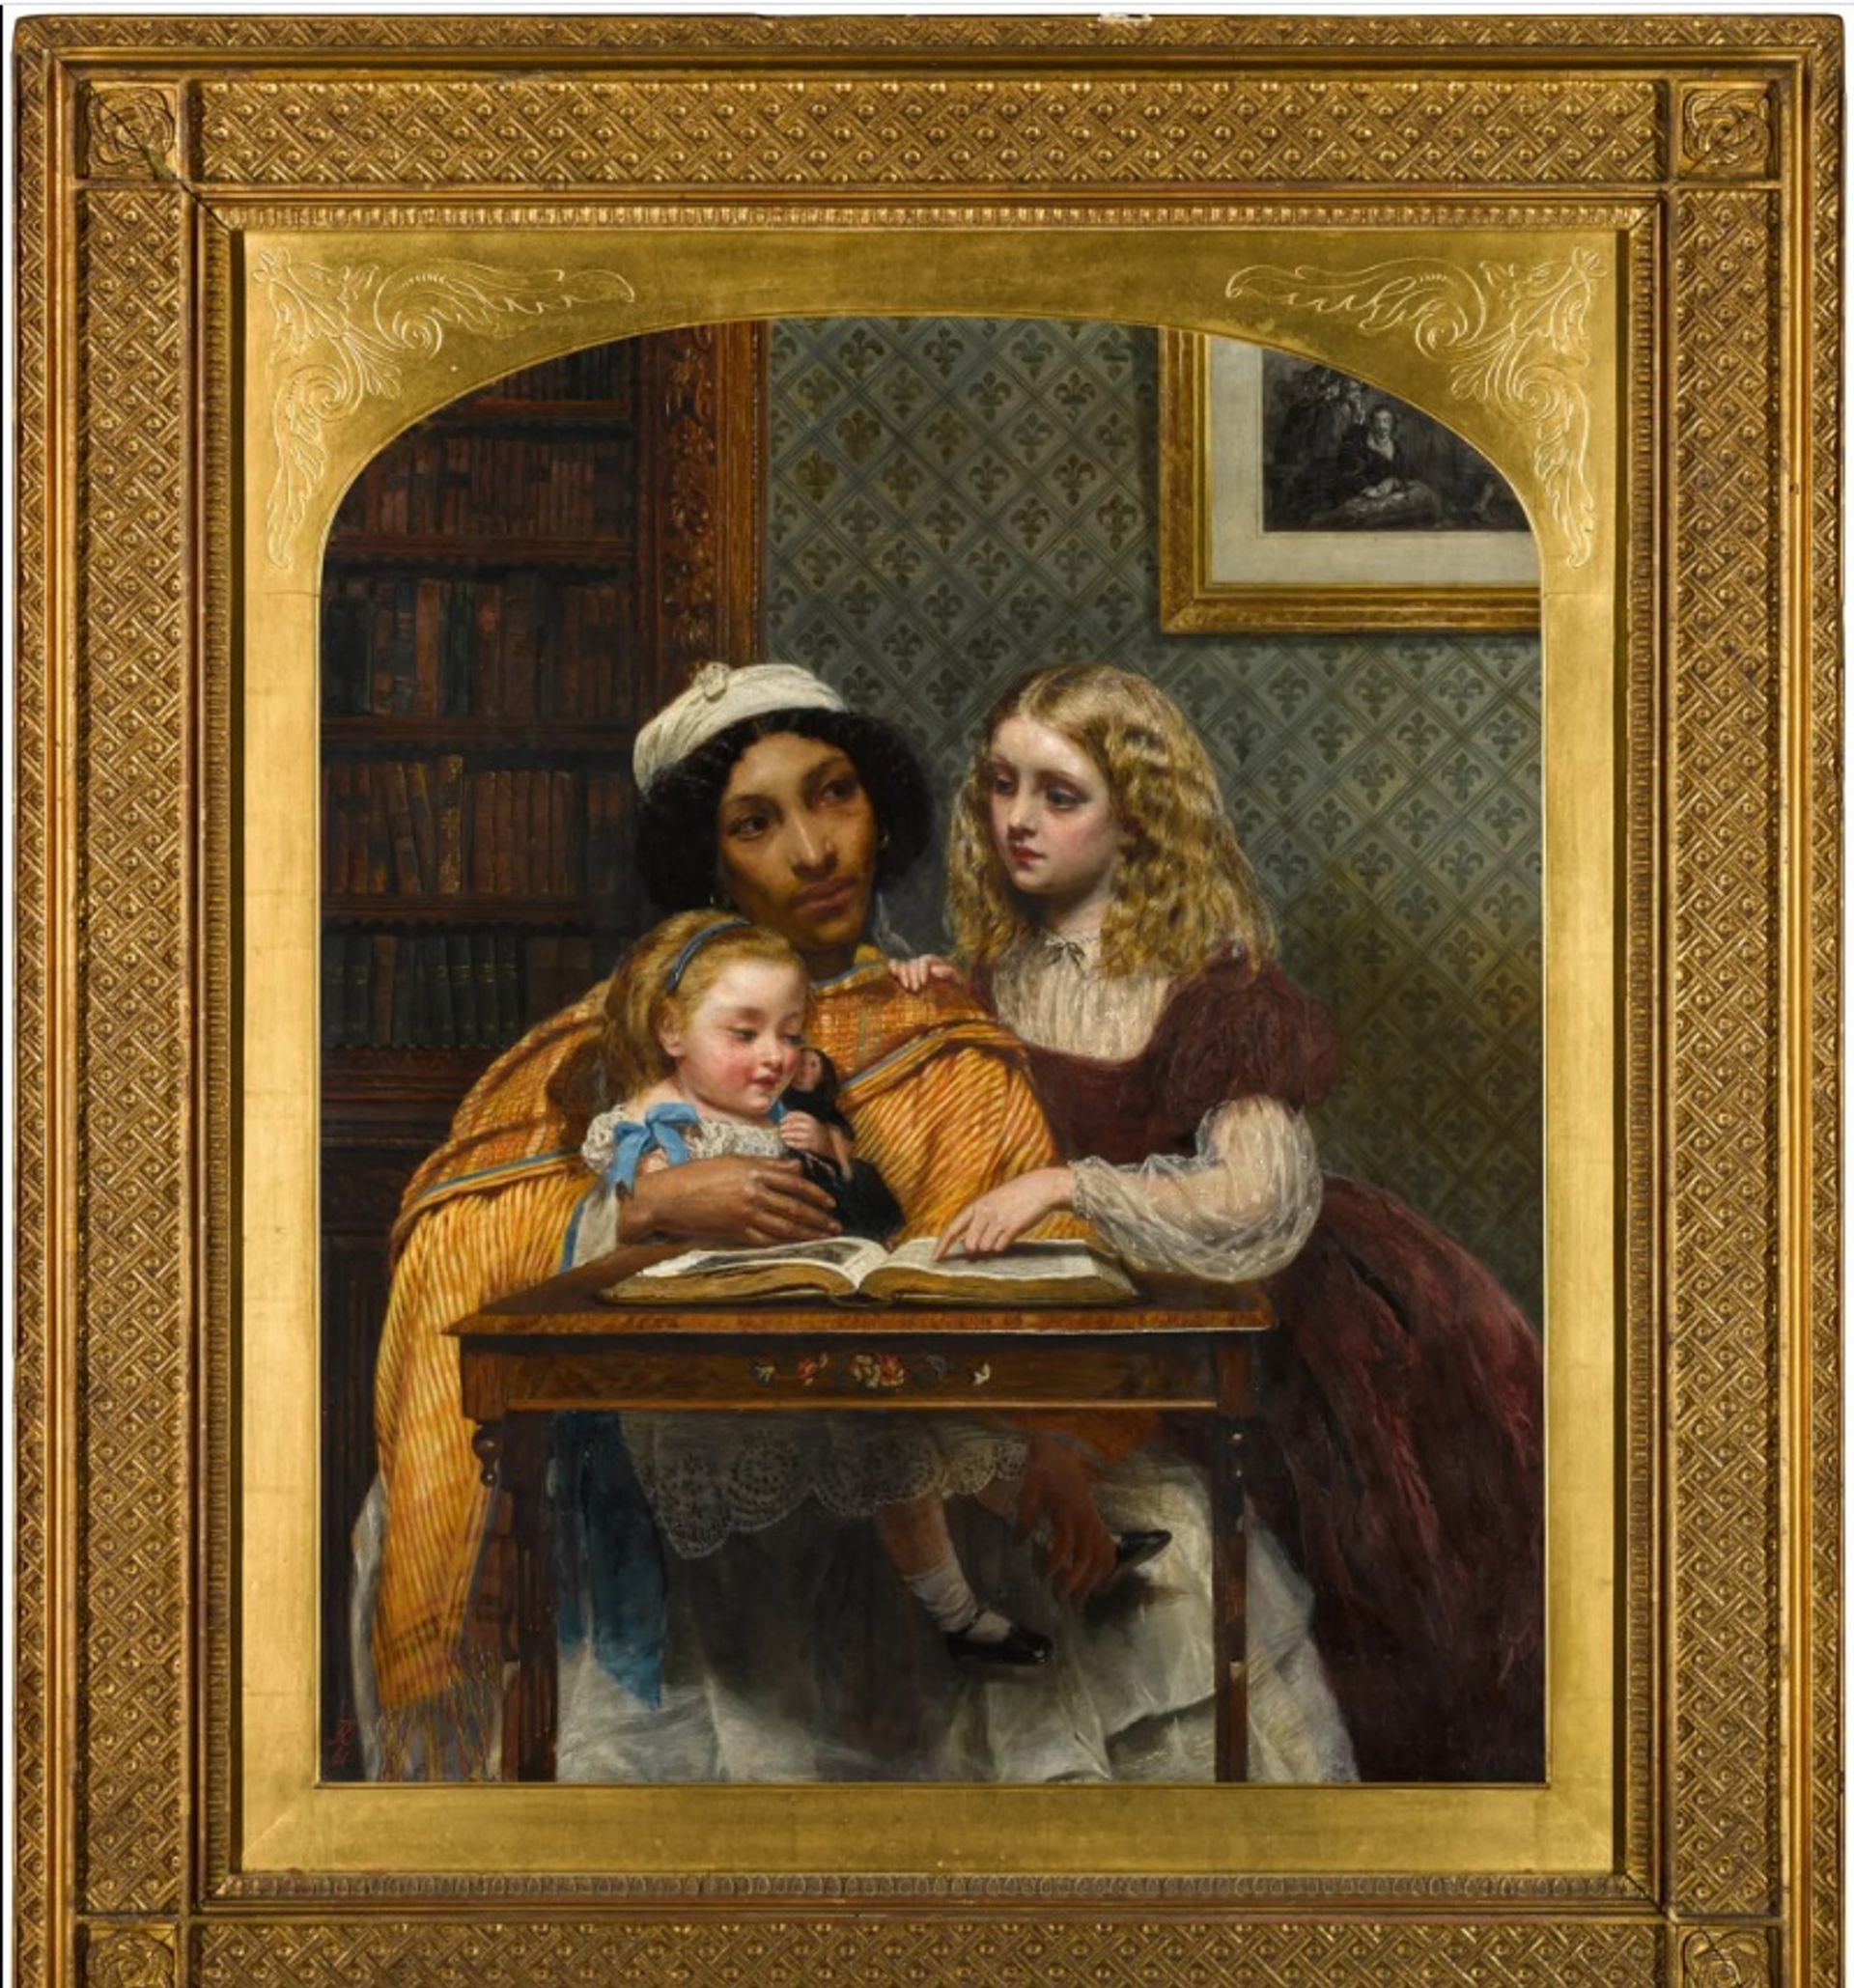 רבקה סולומון, A Young Teacher, 1861. רכישת מוזיאון, קרן Surdna

באדיבות מוזיאון פרינסטון לאמנות, פרינסטון, ניו ג'רזי